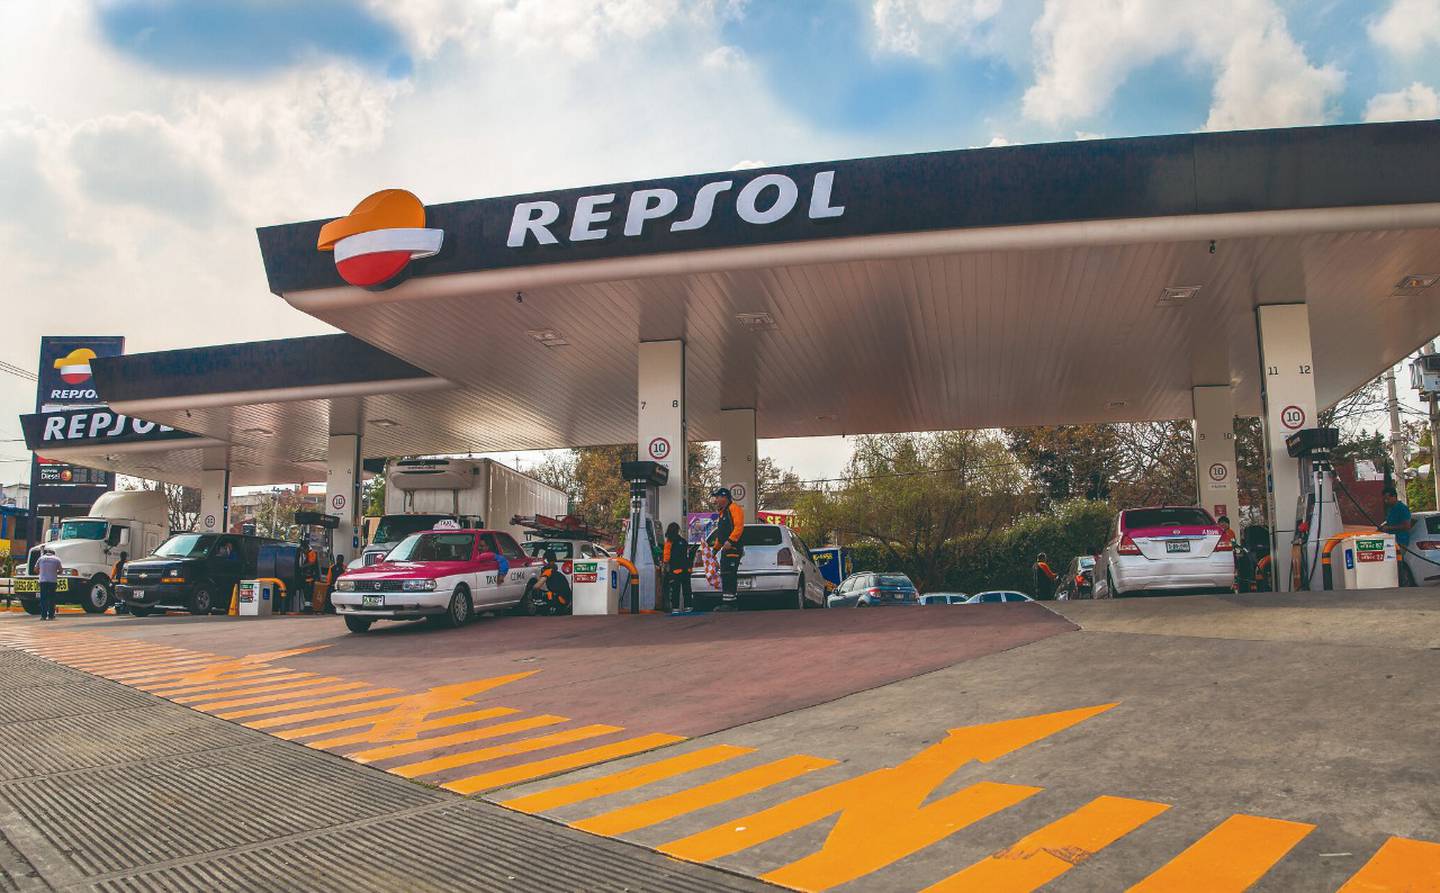 "La compañía implementa de forma inmediata las exoneraciones dispuestas por el gobierno para el beneficio de nuestros clientes”, culminó Repsol Perú en su comunicado.